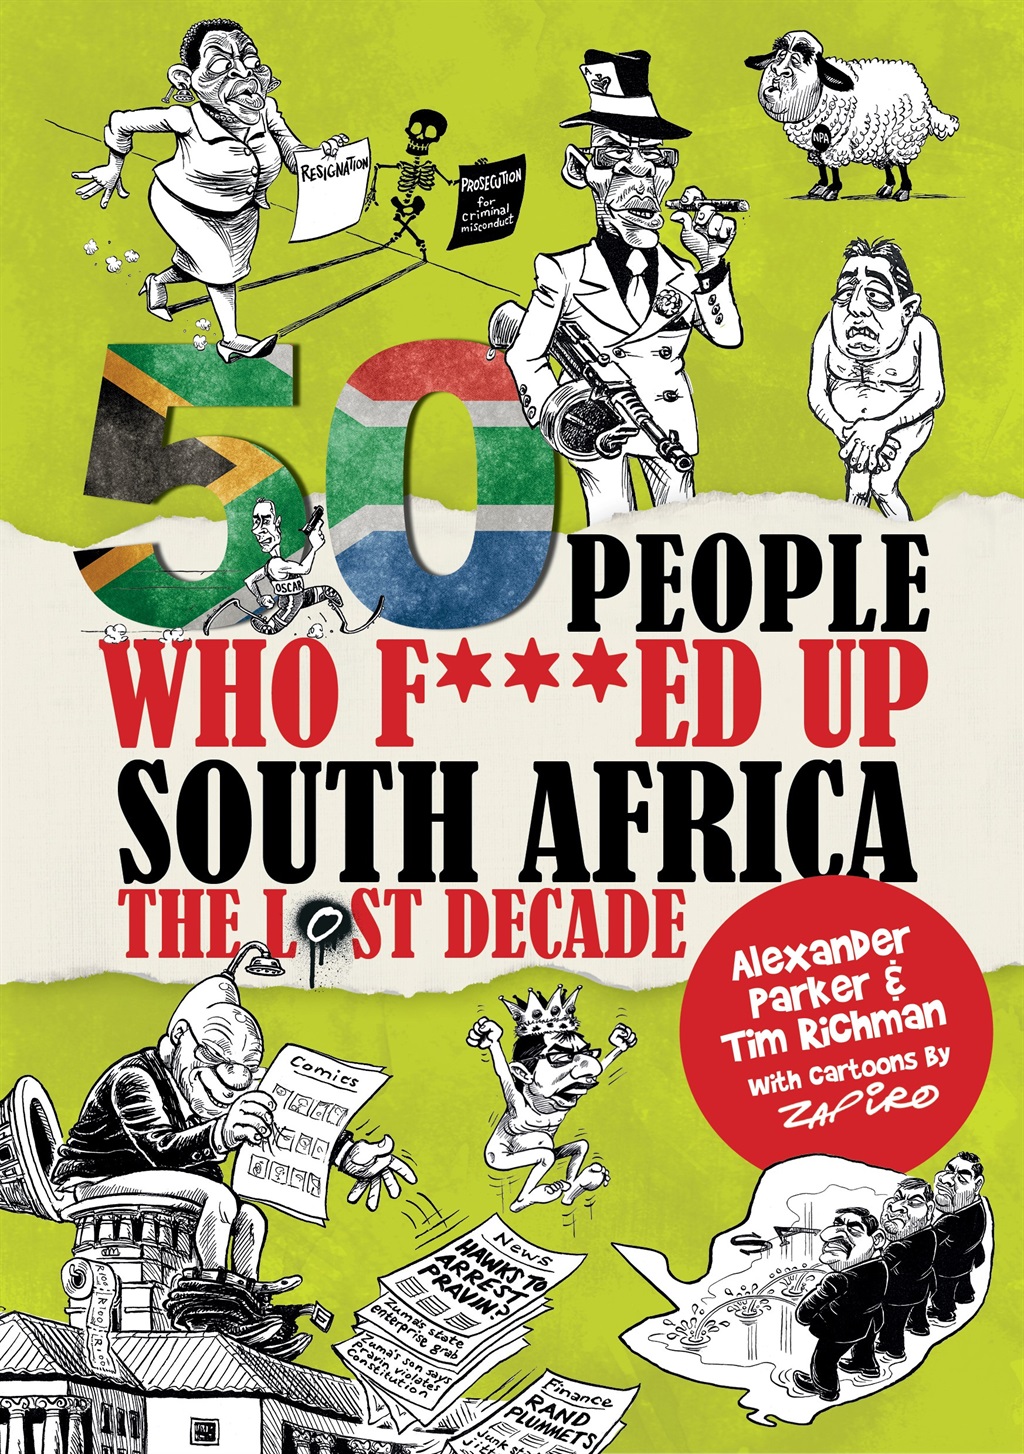 50 people who f****ed up SA (Cover)